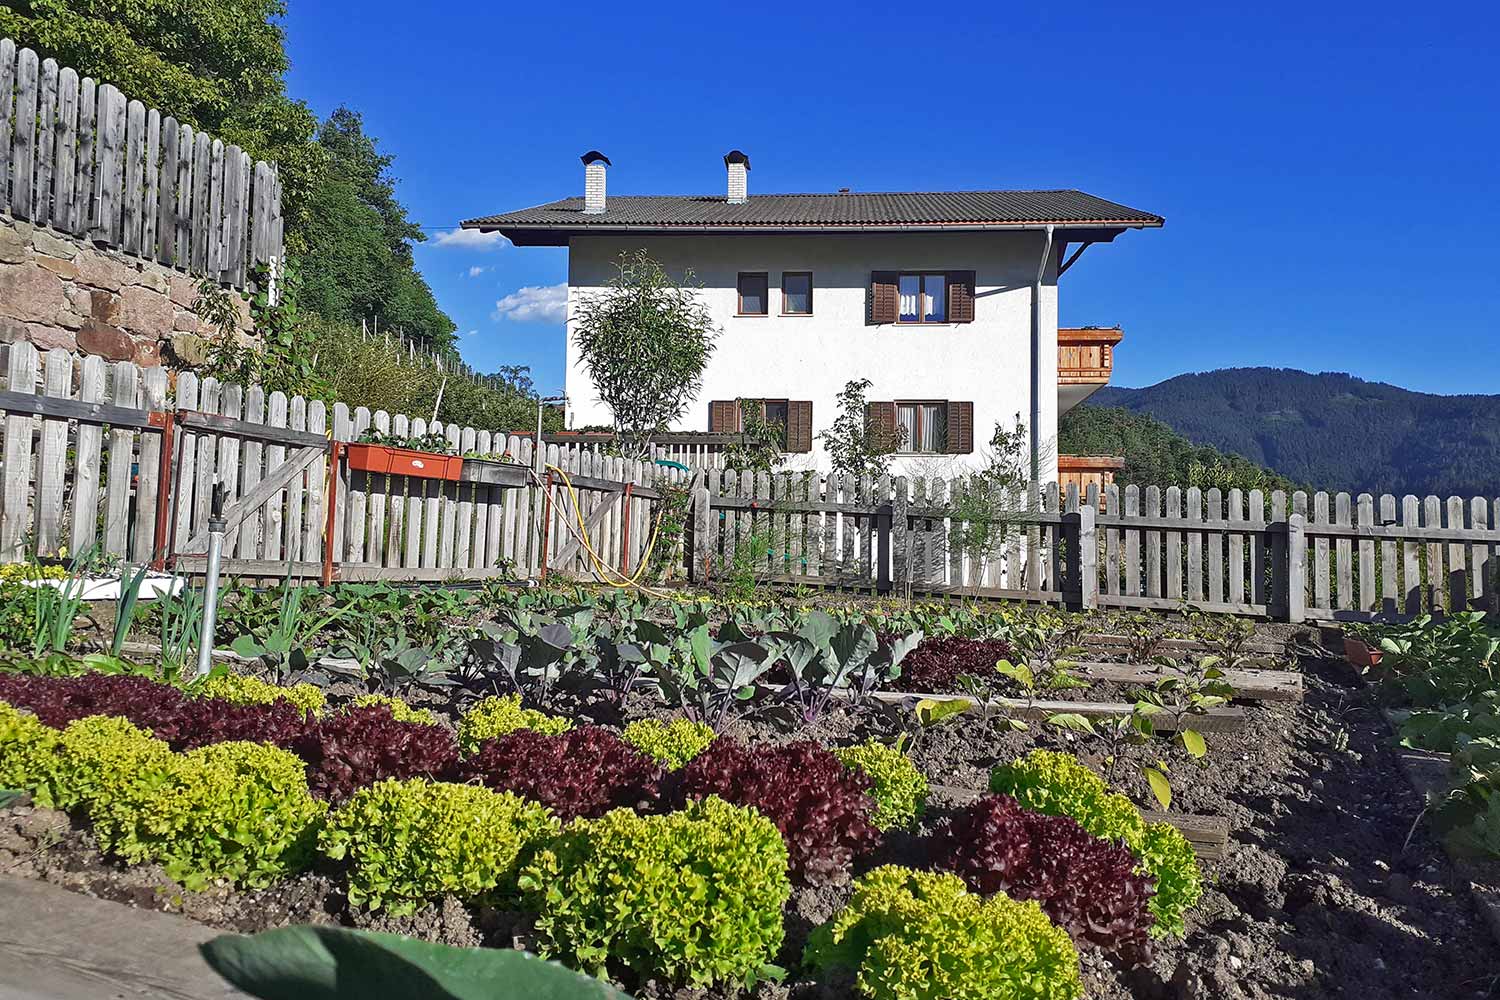 Farm garden in South Tyrol